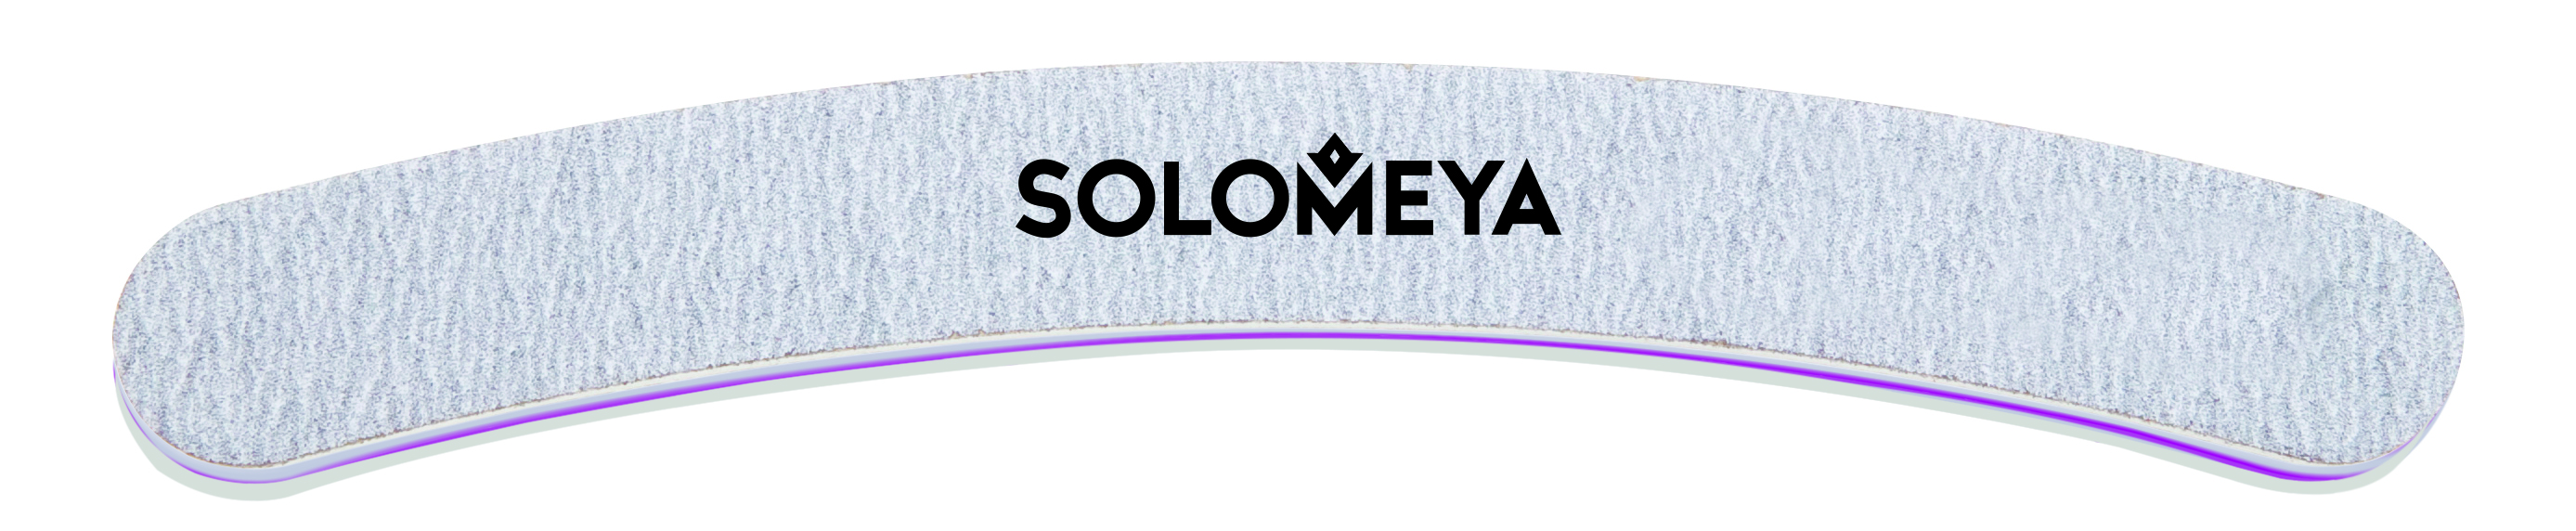 SOLOMEYA Пилка профессиональная жесткая для обработки искусс